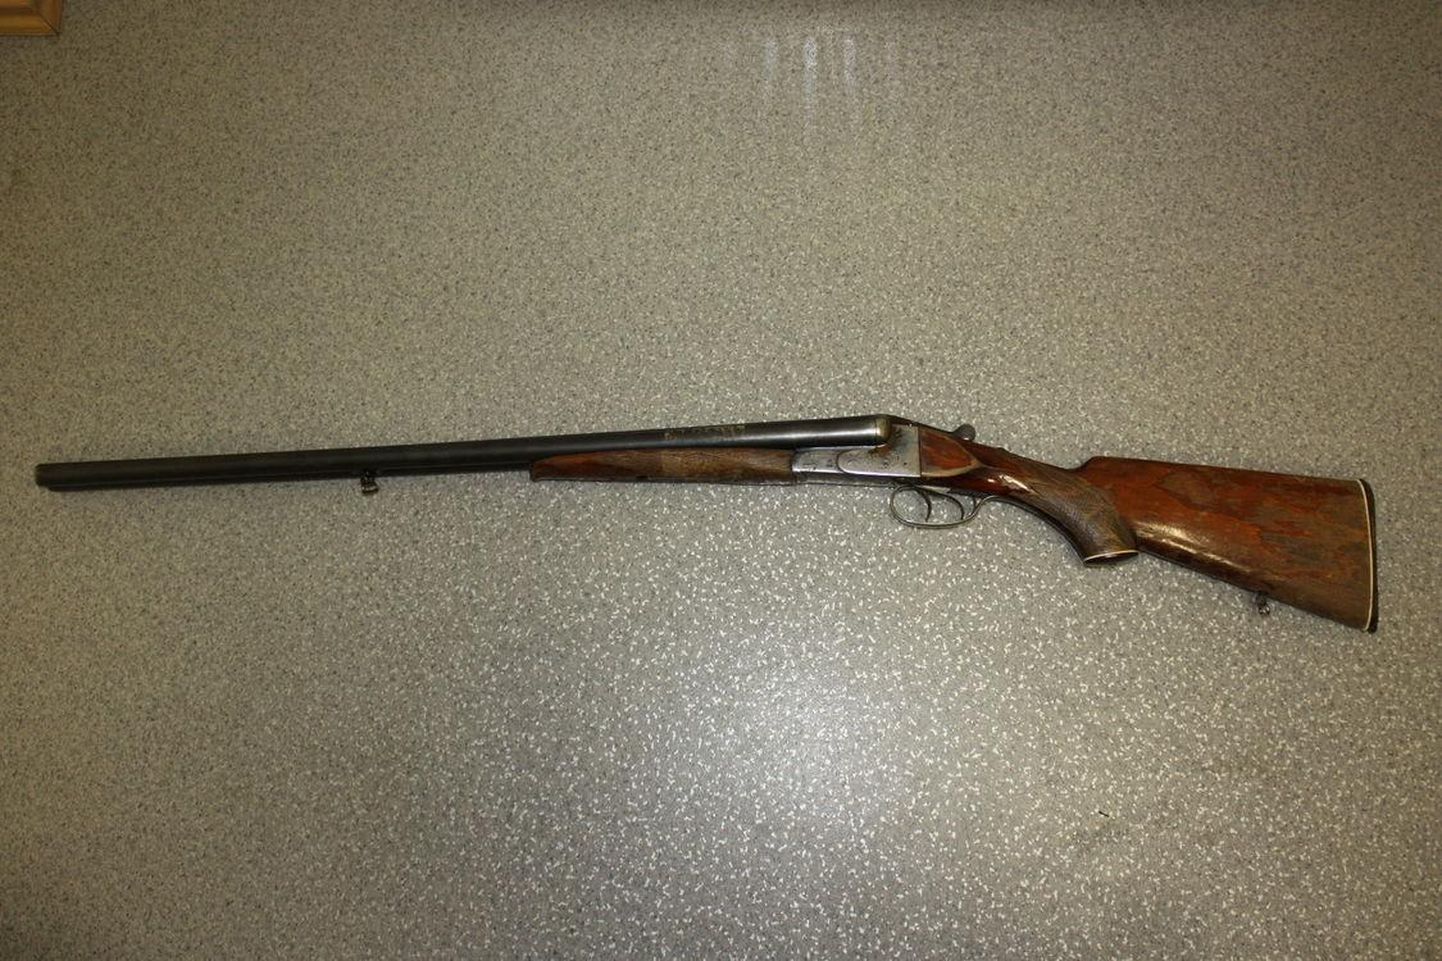 Волостная управа Ляэнеранна выставила на интернет-аукцион четыре охотничьих ружья.